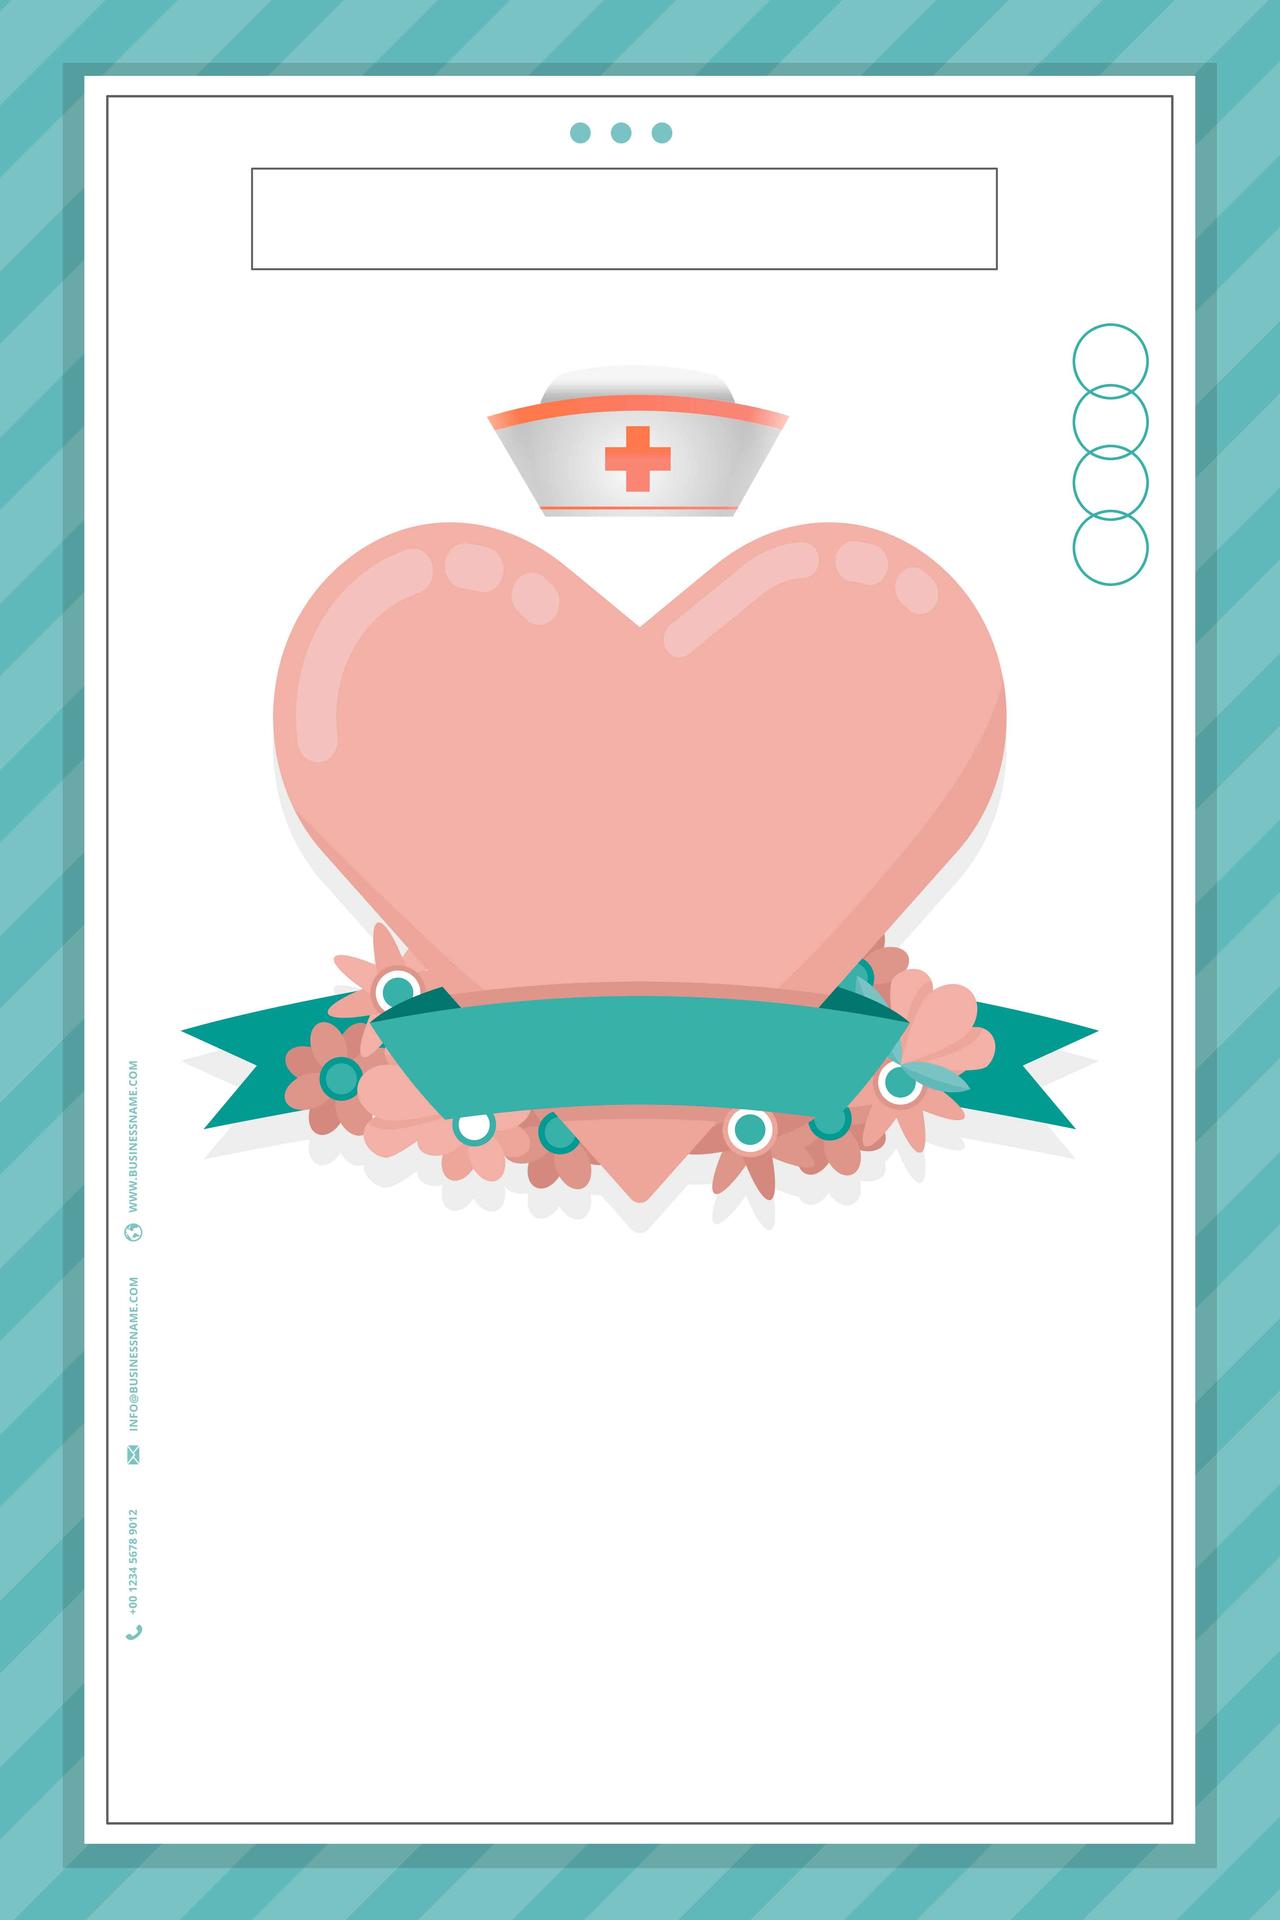 绿边粉红爱心卡通512国际护士节白衣天使海报背景